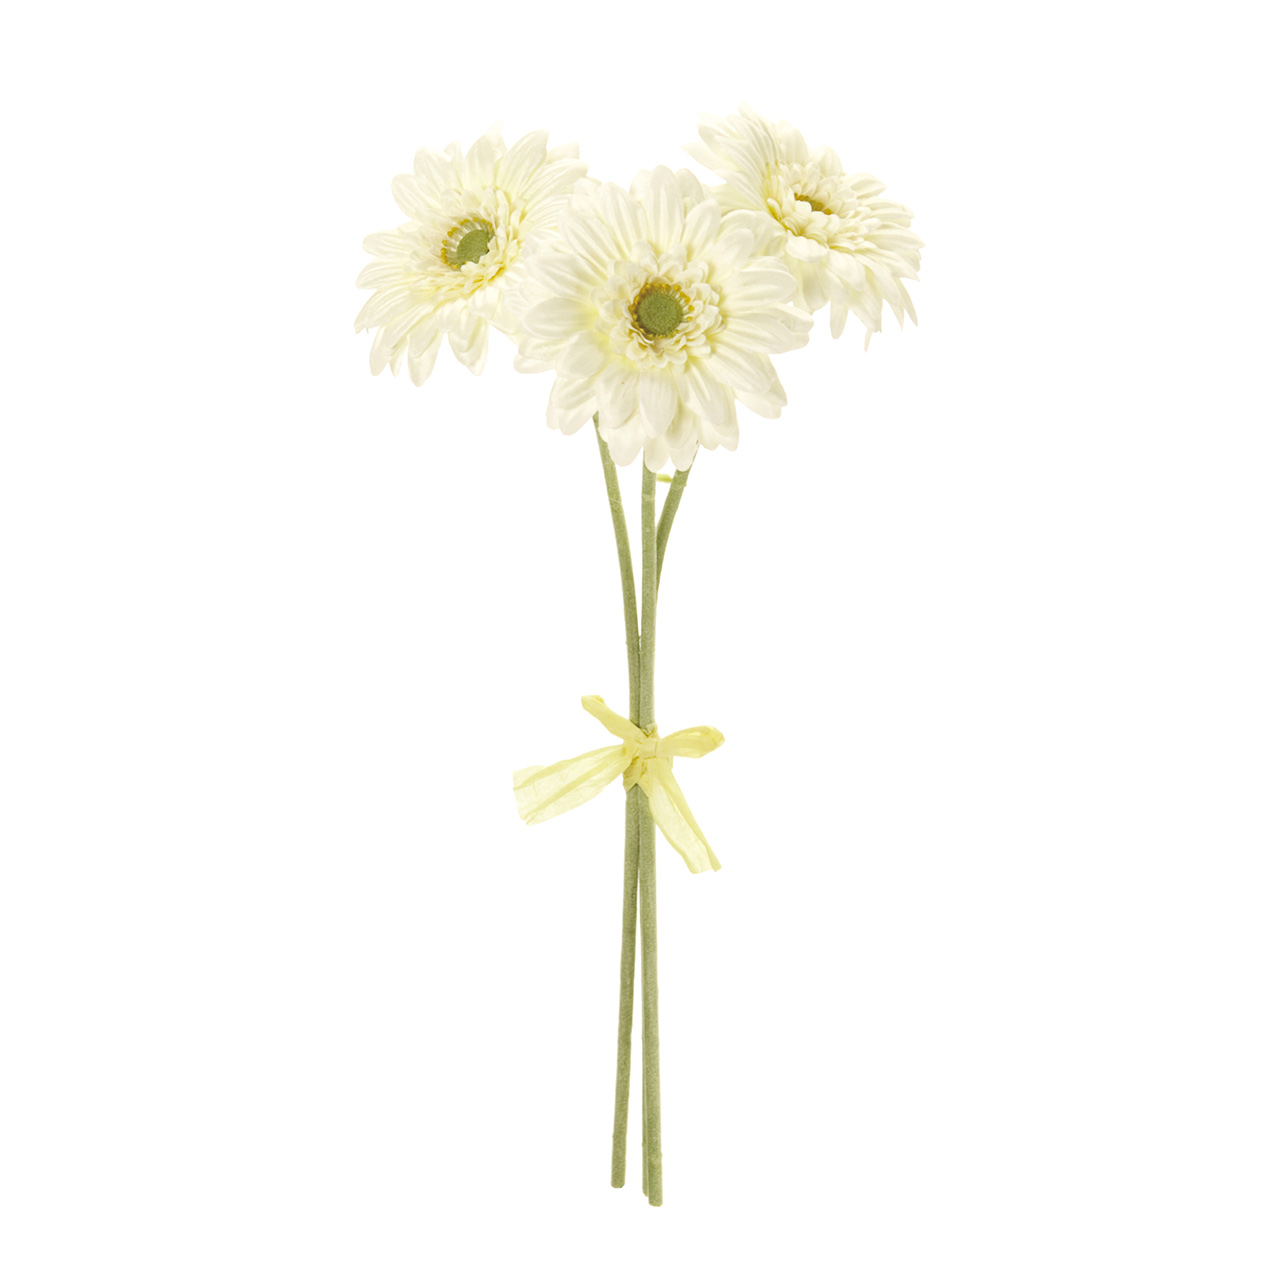 マイフラ】 通販/MAGIQ ソレイユガーベラ バンドル クリーム アーティフィシャルフラワー 造花 FM002832-037 1束 ガーベラ(クリーム):  MAGIQ(アーティフィシャルフラワー 造花)/全国にMAGIQ、花器、花資材などをお届けします。